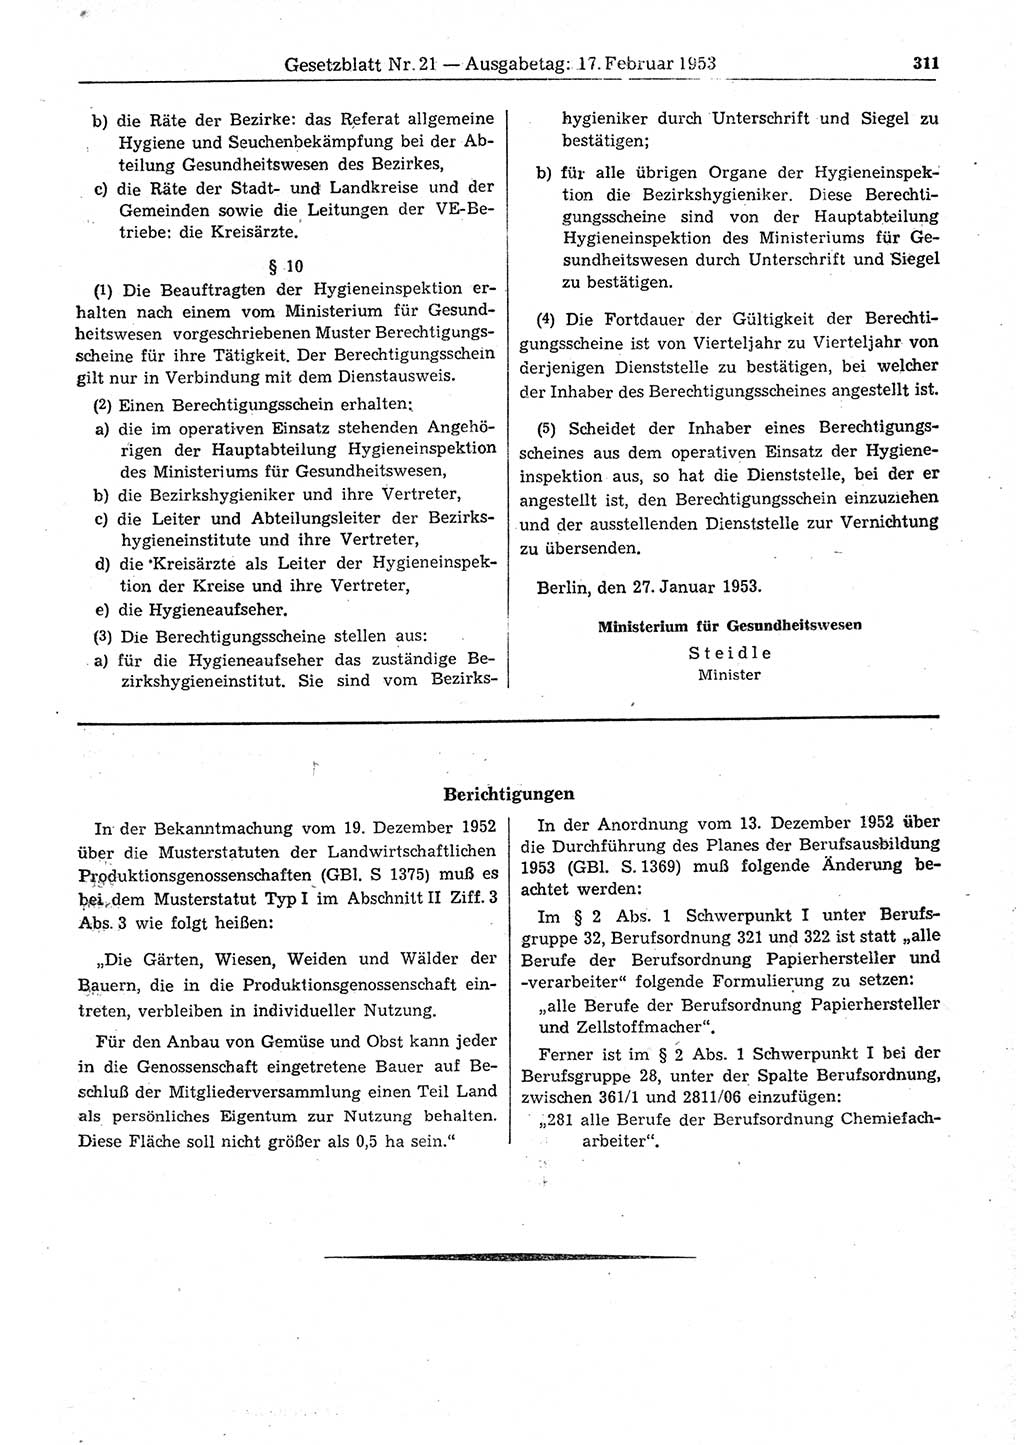 Gesetzblatt (GBl.) der Deutschen Demokratischen Republik (DDR) 1953, Seite 311 (GBl. DDR 1953, S. 311)